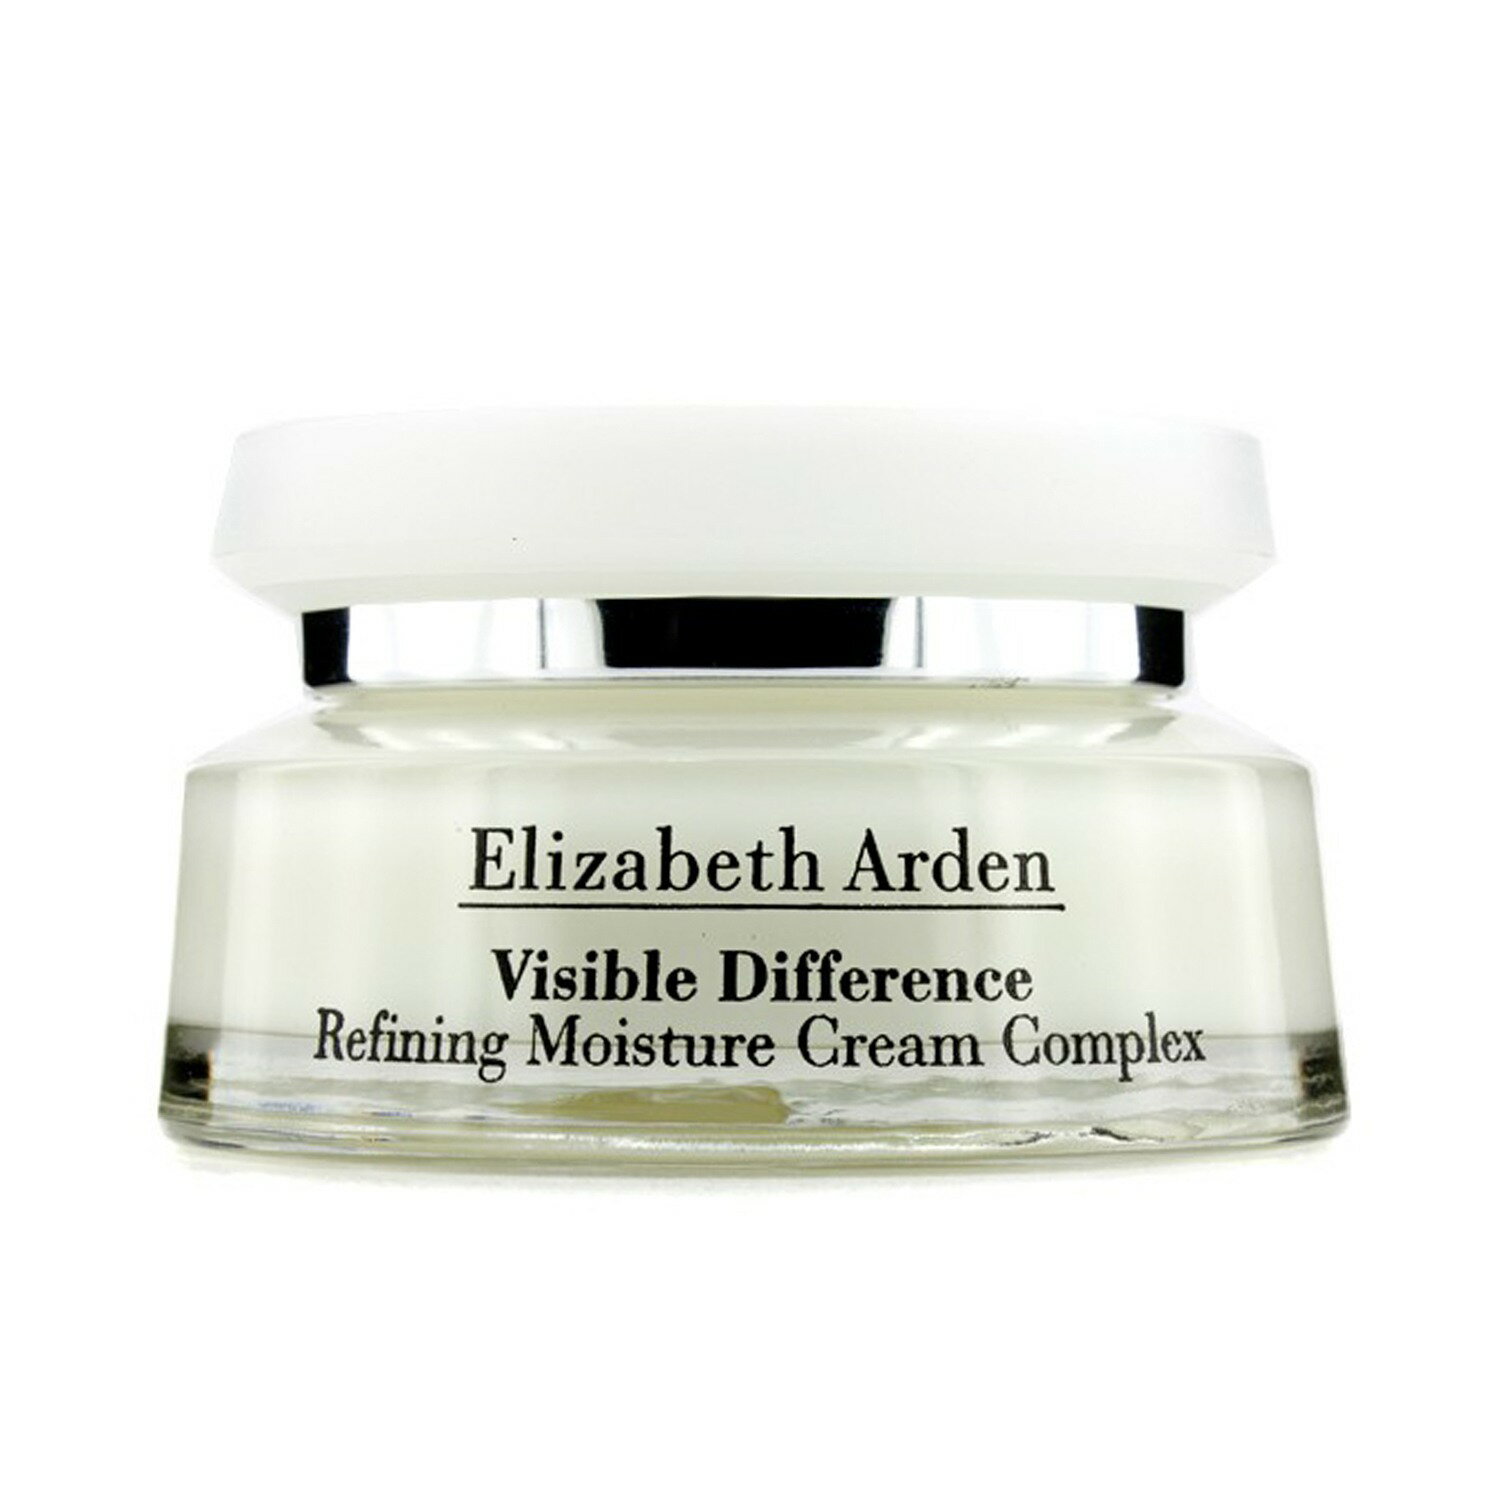 伊麗莎白雅頓 Elizabeth Arden - 水顏顯效複合霜 (21天霜) Visible Difference Refining Moisture Cream Complex 75/100ml